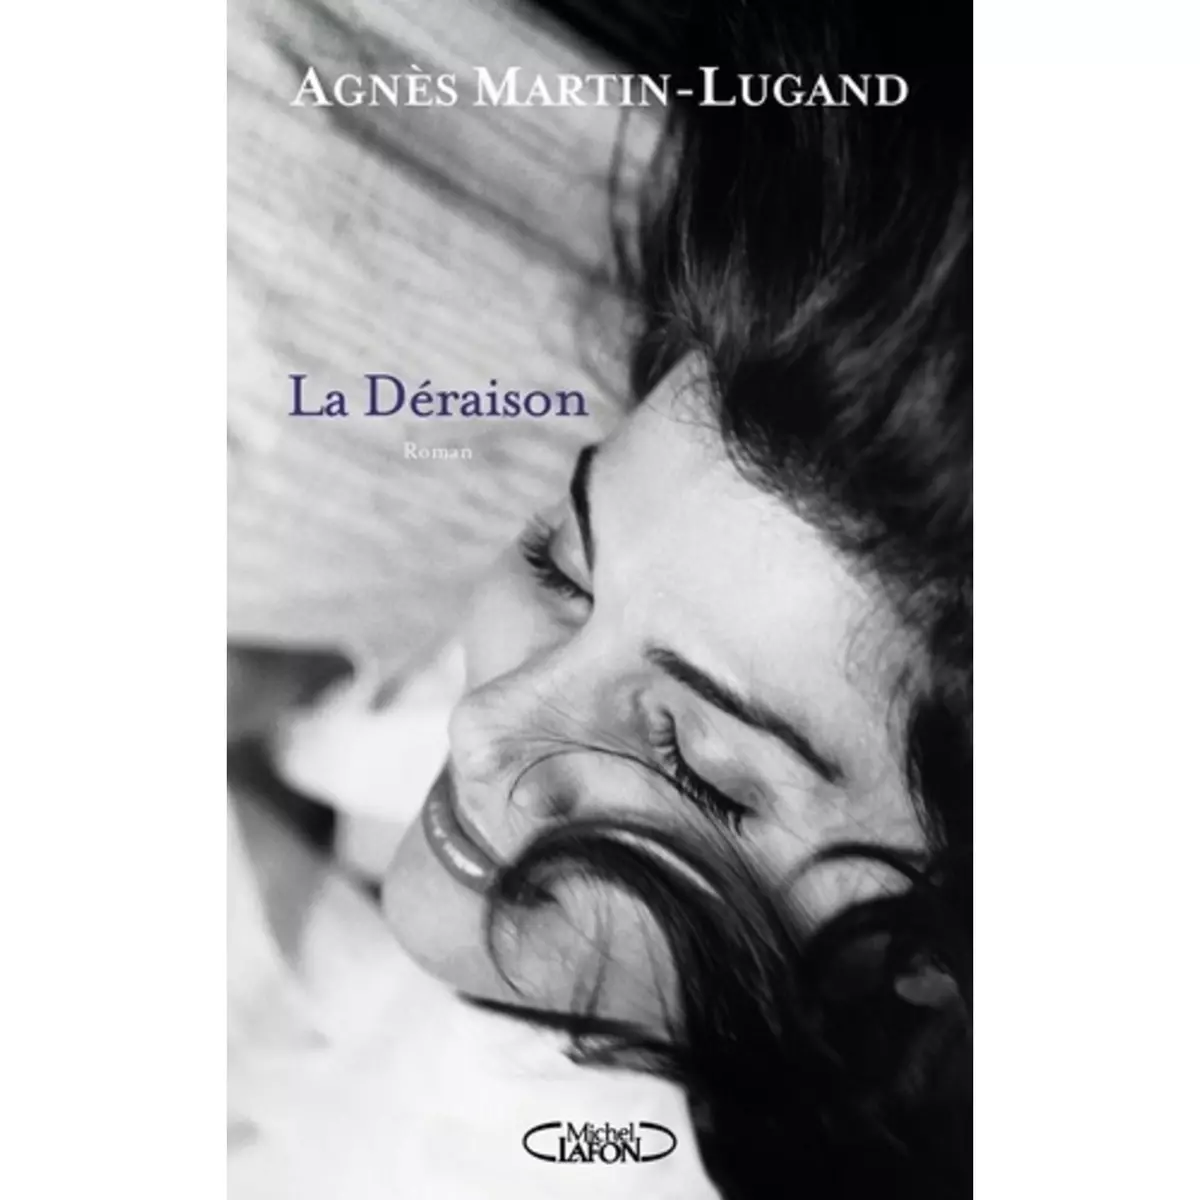  LA DERAISON, Martin-Lugand Agnès